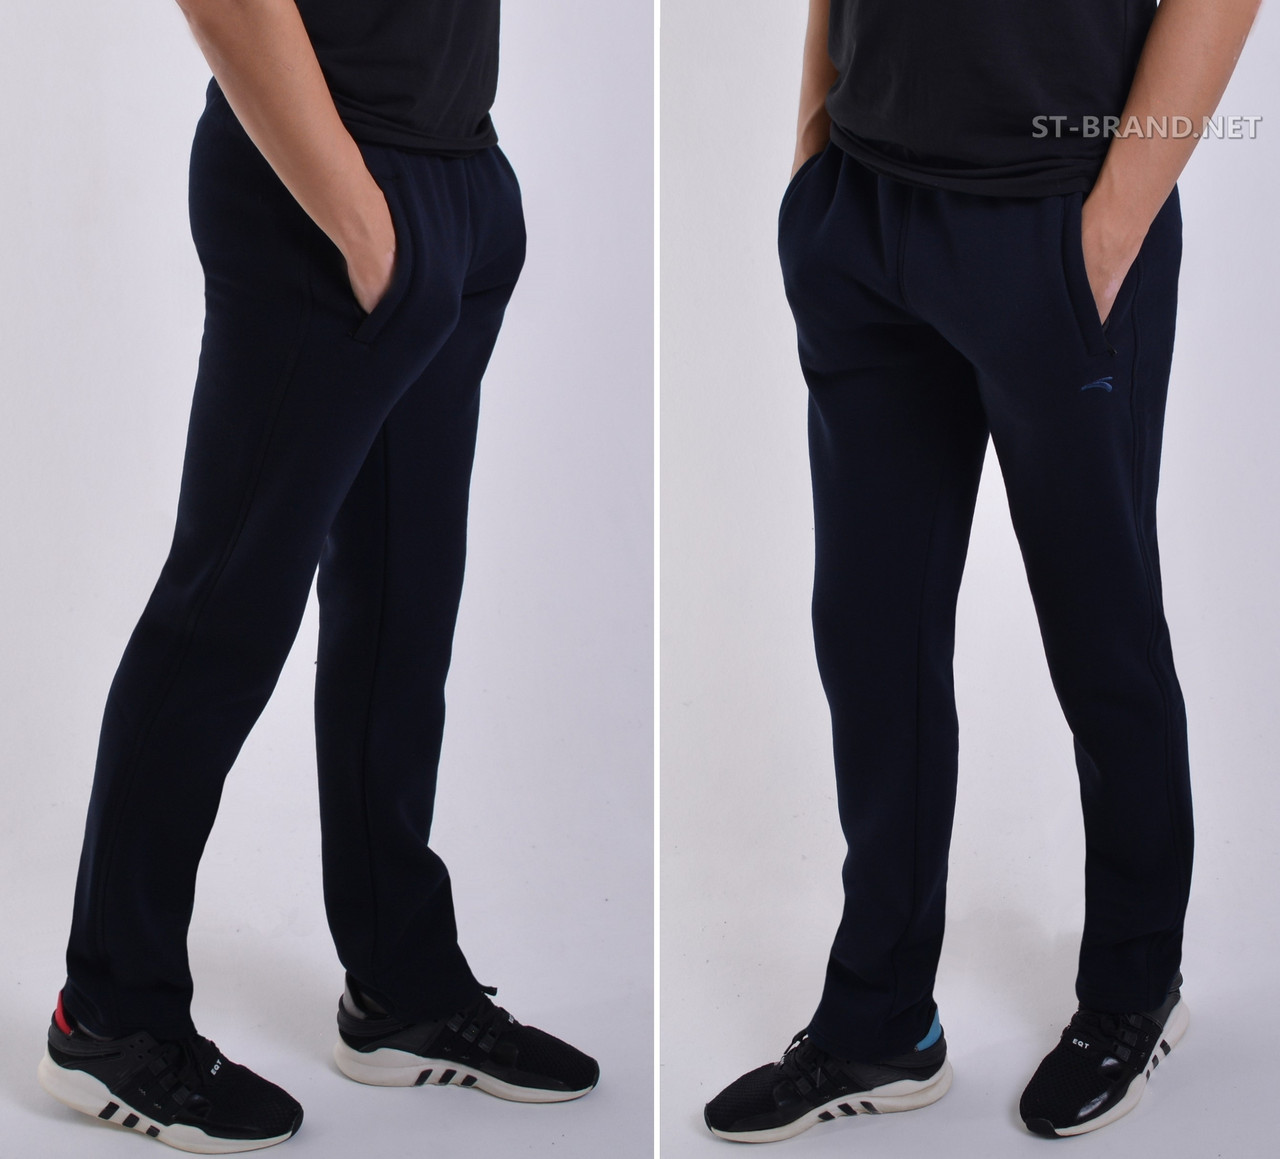 48,50,52,54,56. Утеплені чоловічі спортивні штани ST-BRAND / Трикотаж тринитка - темно-сині